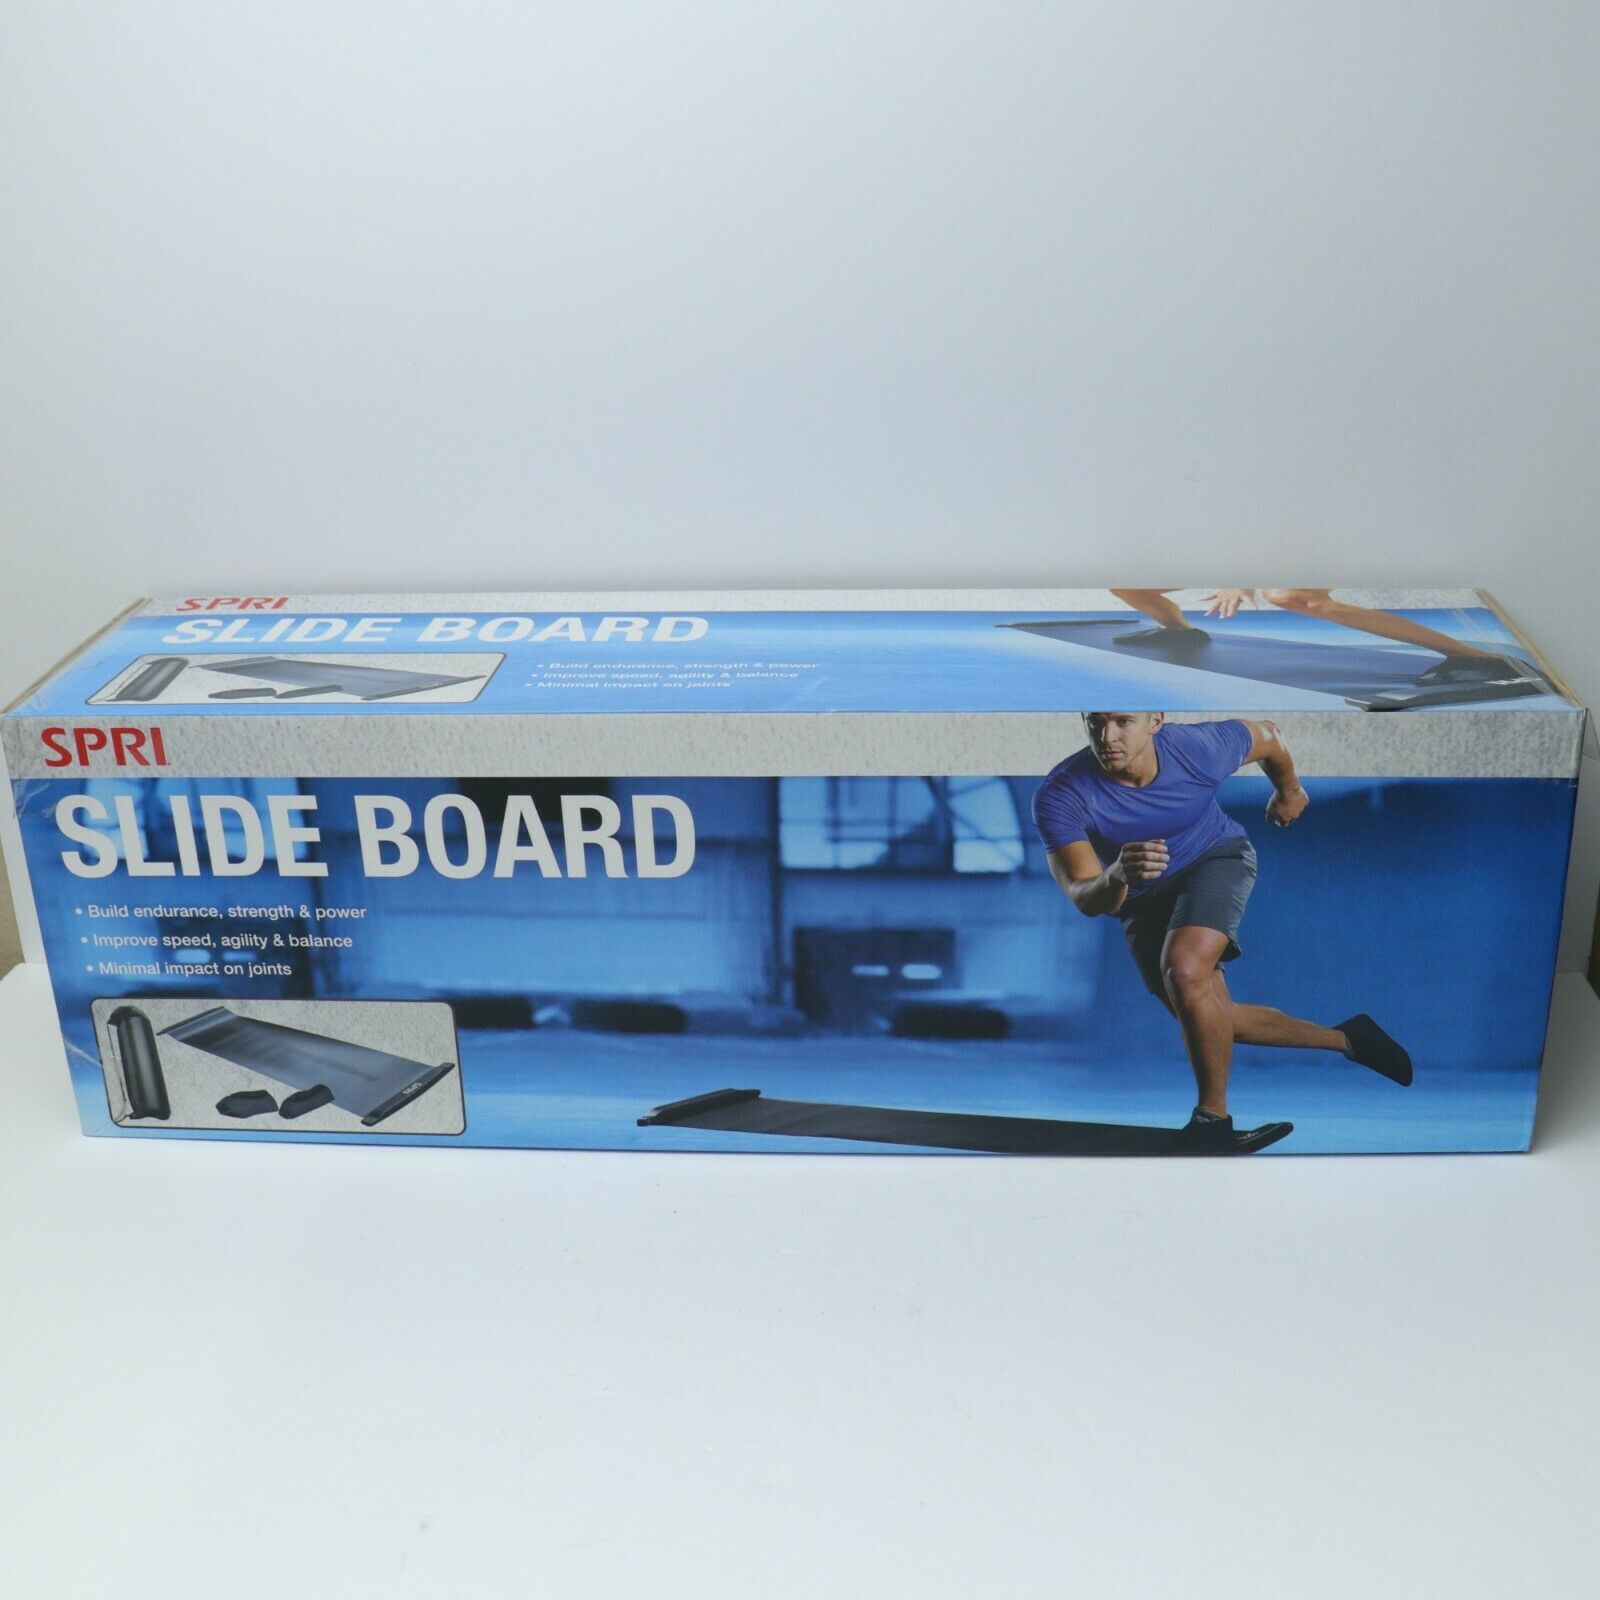 Spri Slide Board & End Stops, Sliding Booties, Mesh Bag & Exercise Guide